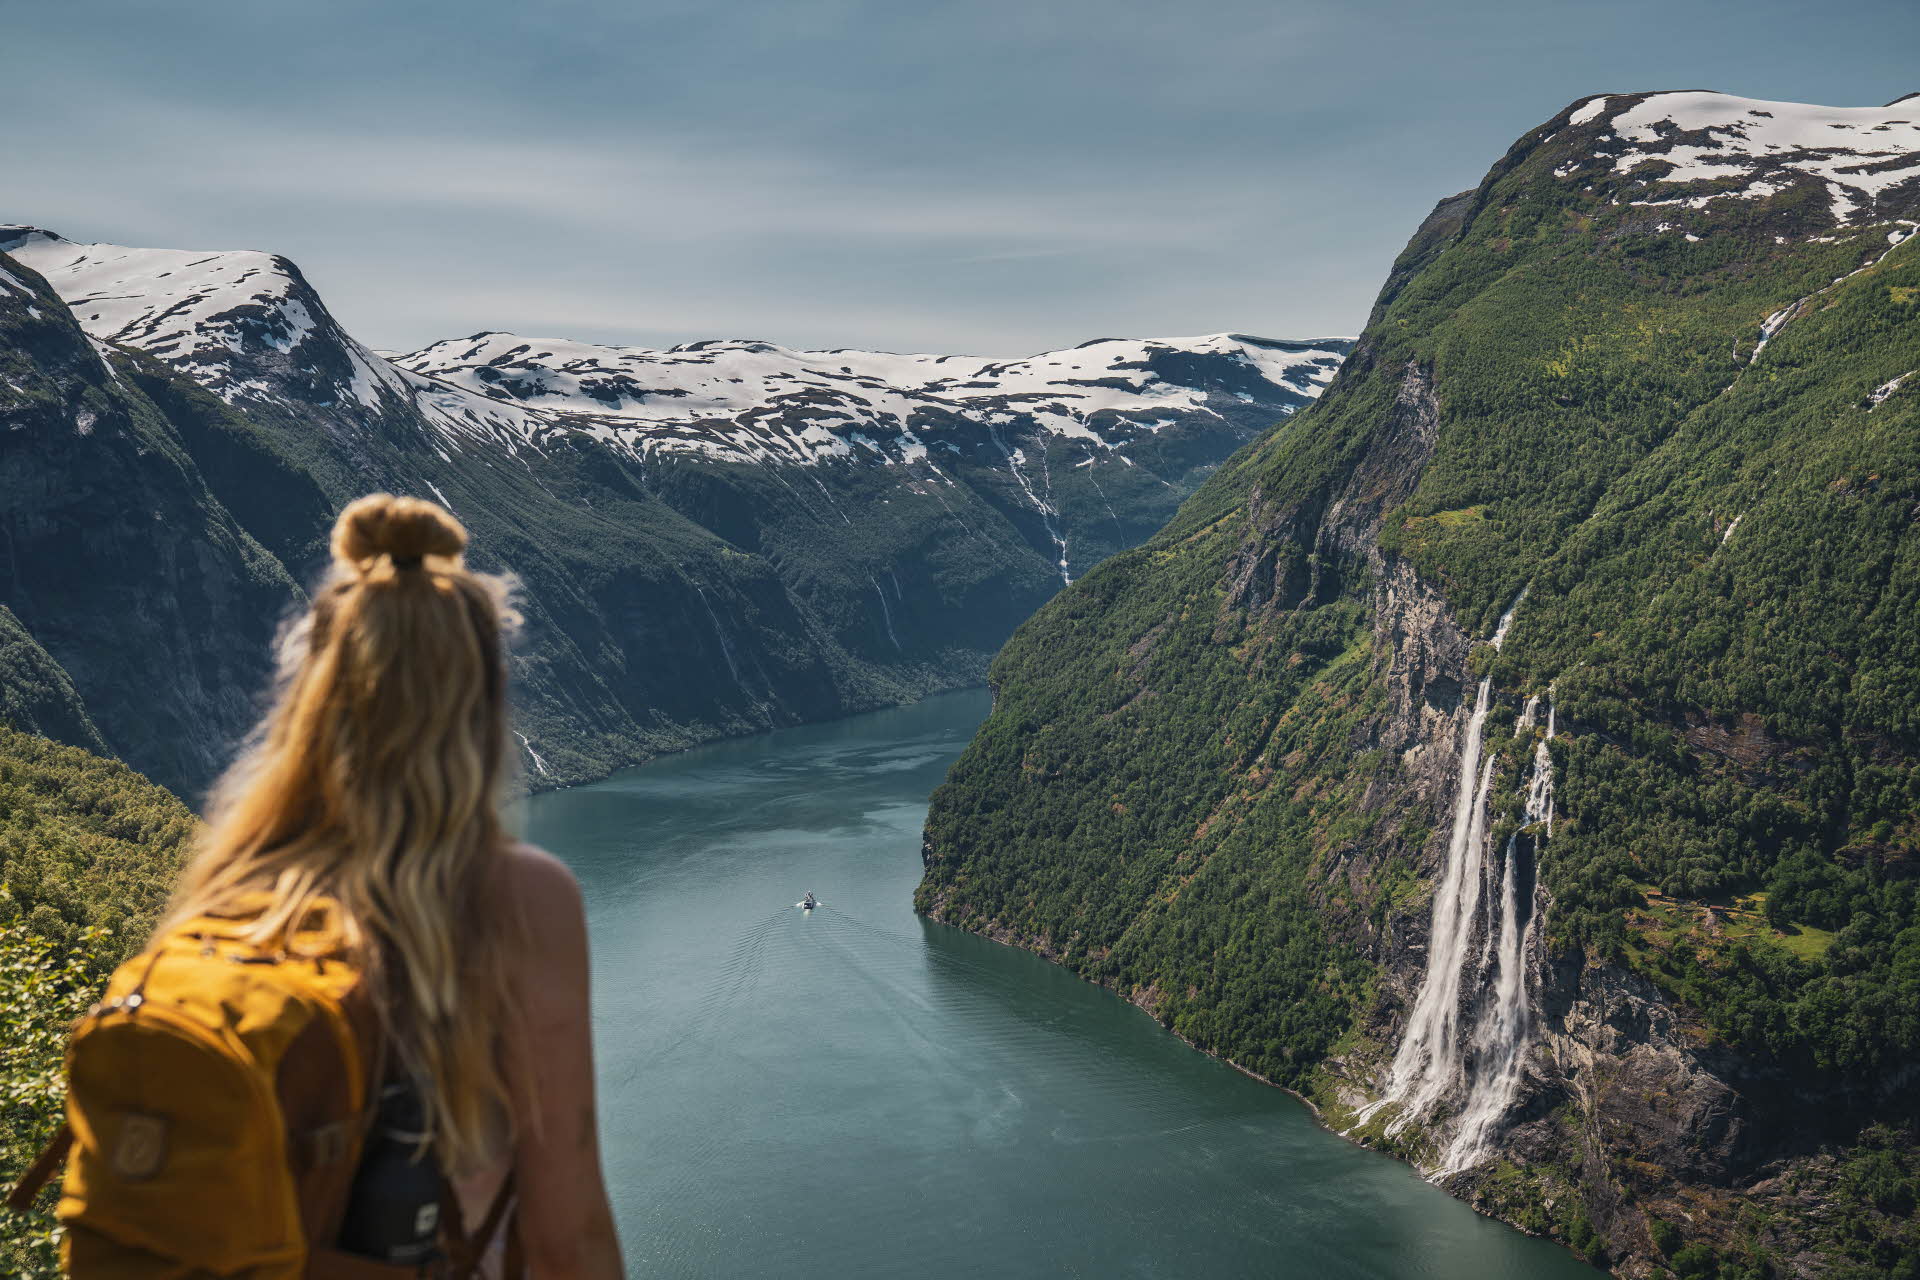 背着黄色背包的金色长发女子俯视着盖朗厄尔峡湾 (Geirangerfjord)。白雪覆盖的群山和七姐妹瀑布 (Seven Sisters Waterfall)。 